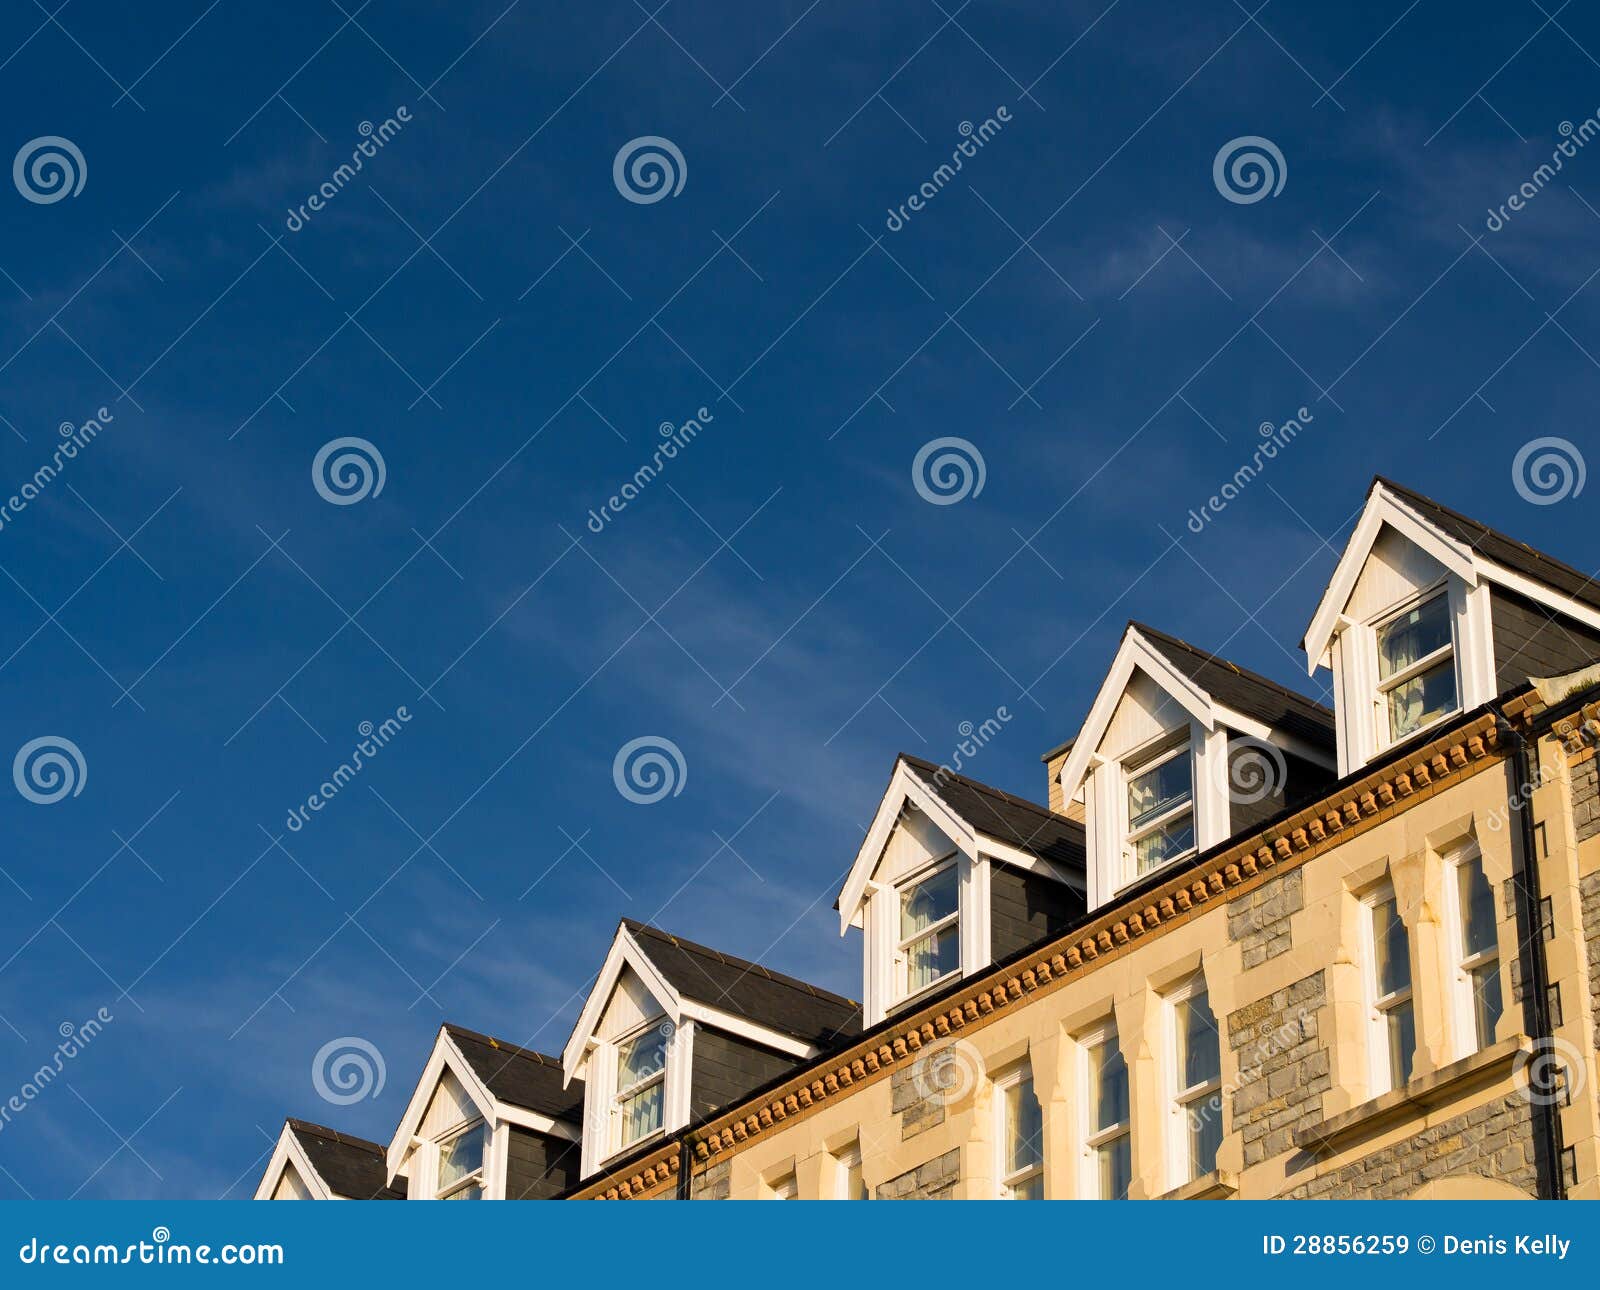 dormer windows in terraced houses